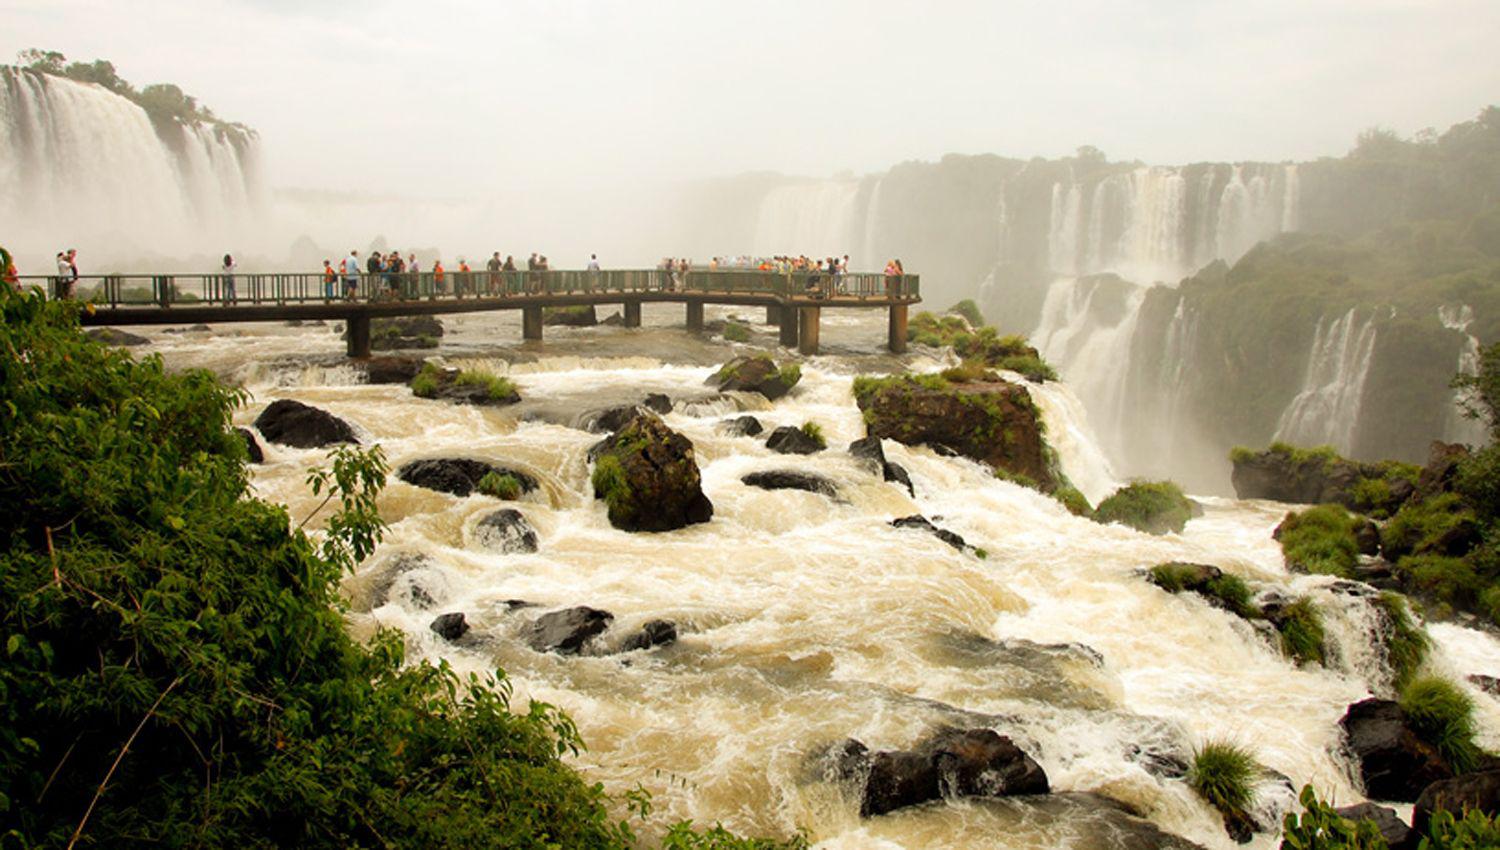 Reabren al puacuteblico el paso a las cataratas del Iguazuacute